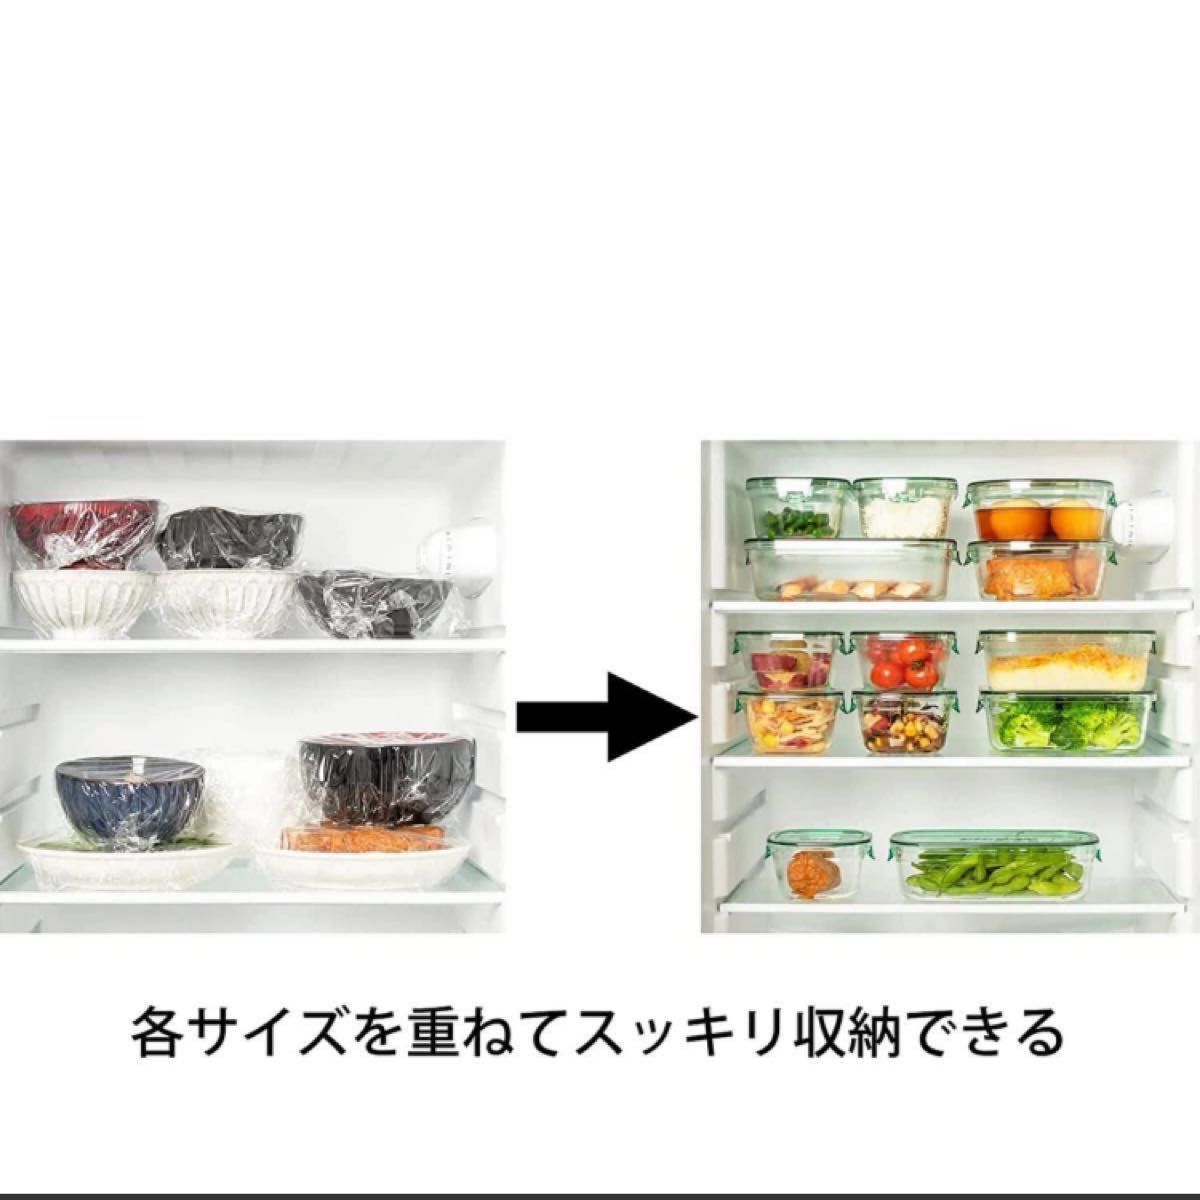 iwaki(イワキ) 耐熱ガラス 保存容器 グリーン 7個セット パック&レンジ 新品未使用